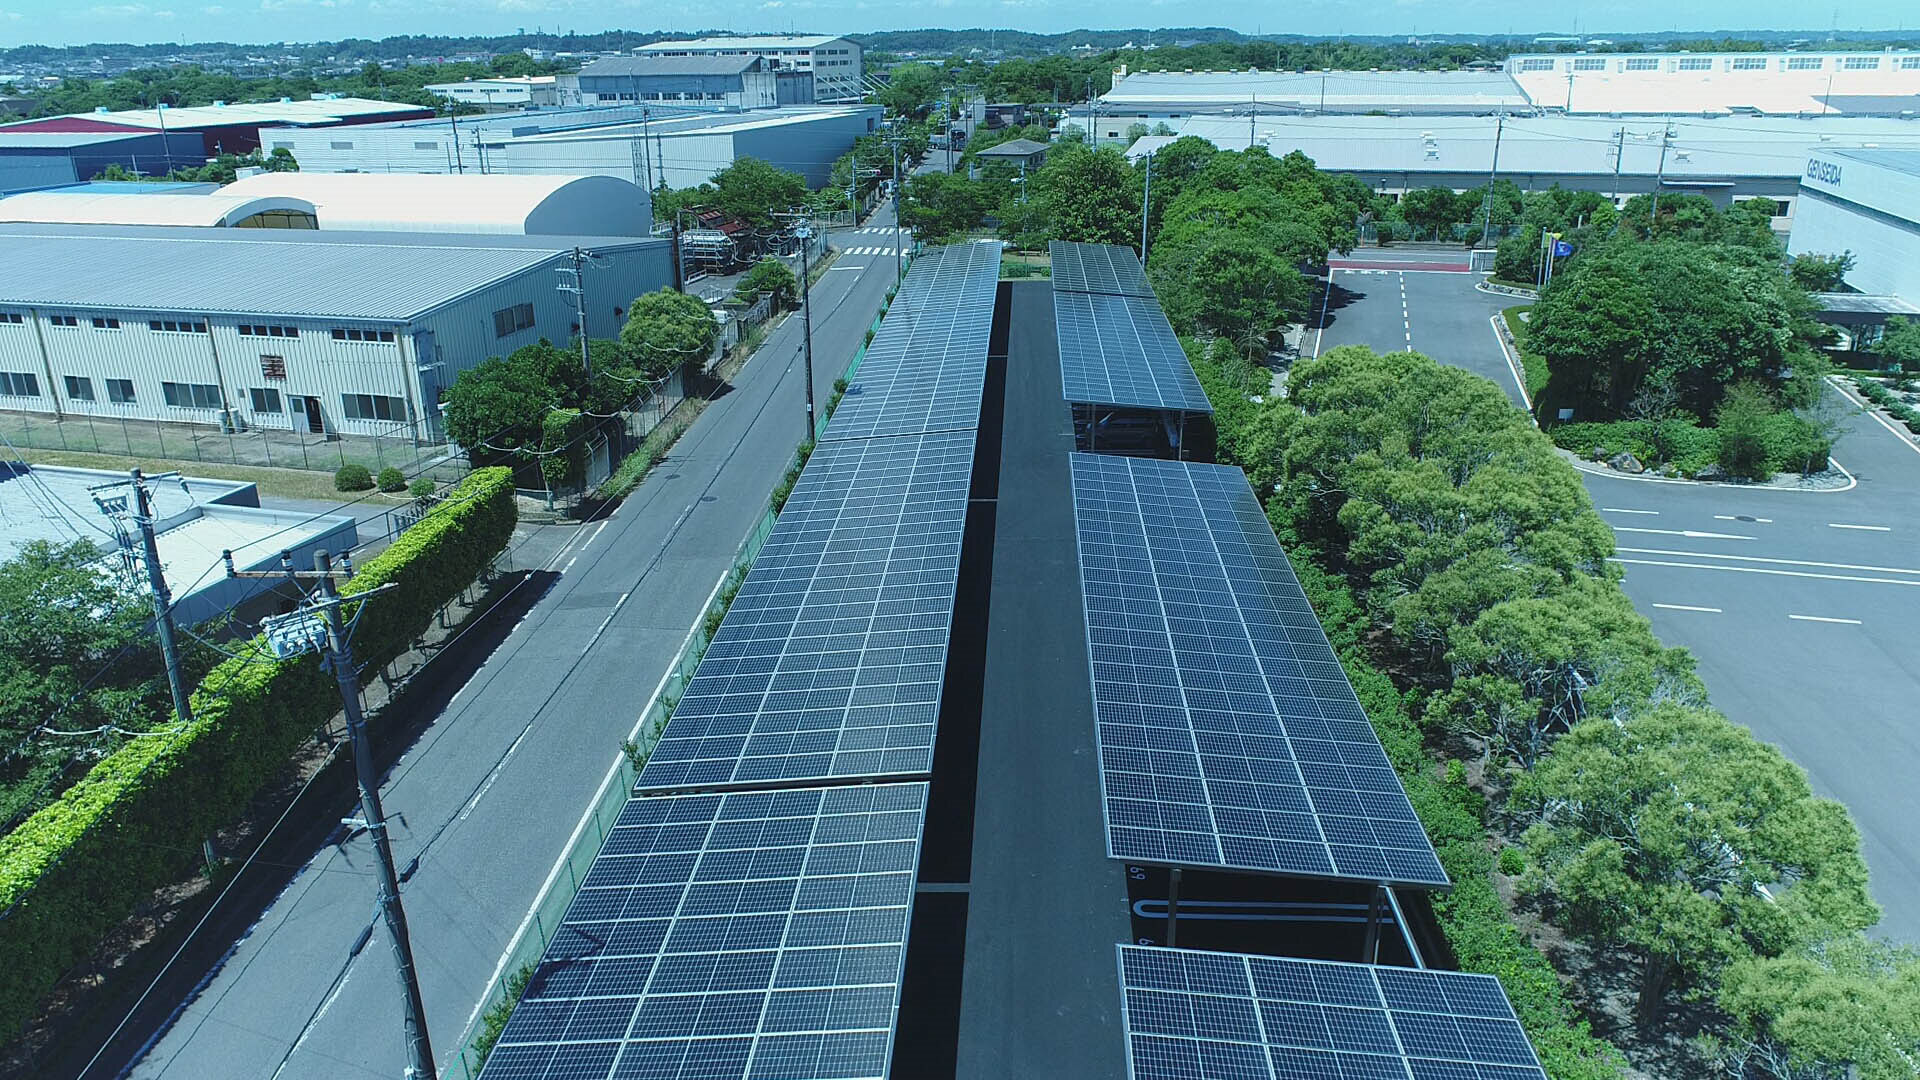 Навес для автомобиля на фабрике в Японии 0,3 МВт Проект промышленного и коммерческого распределенного производства электроэнергии